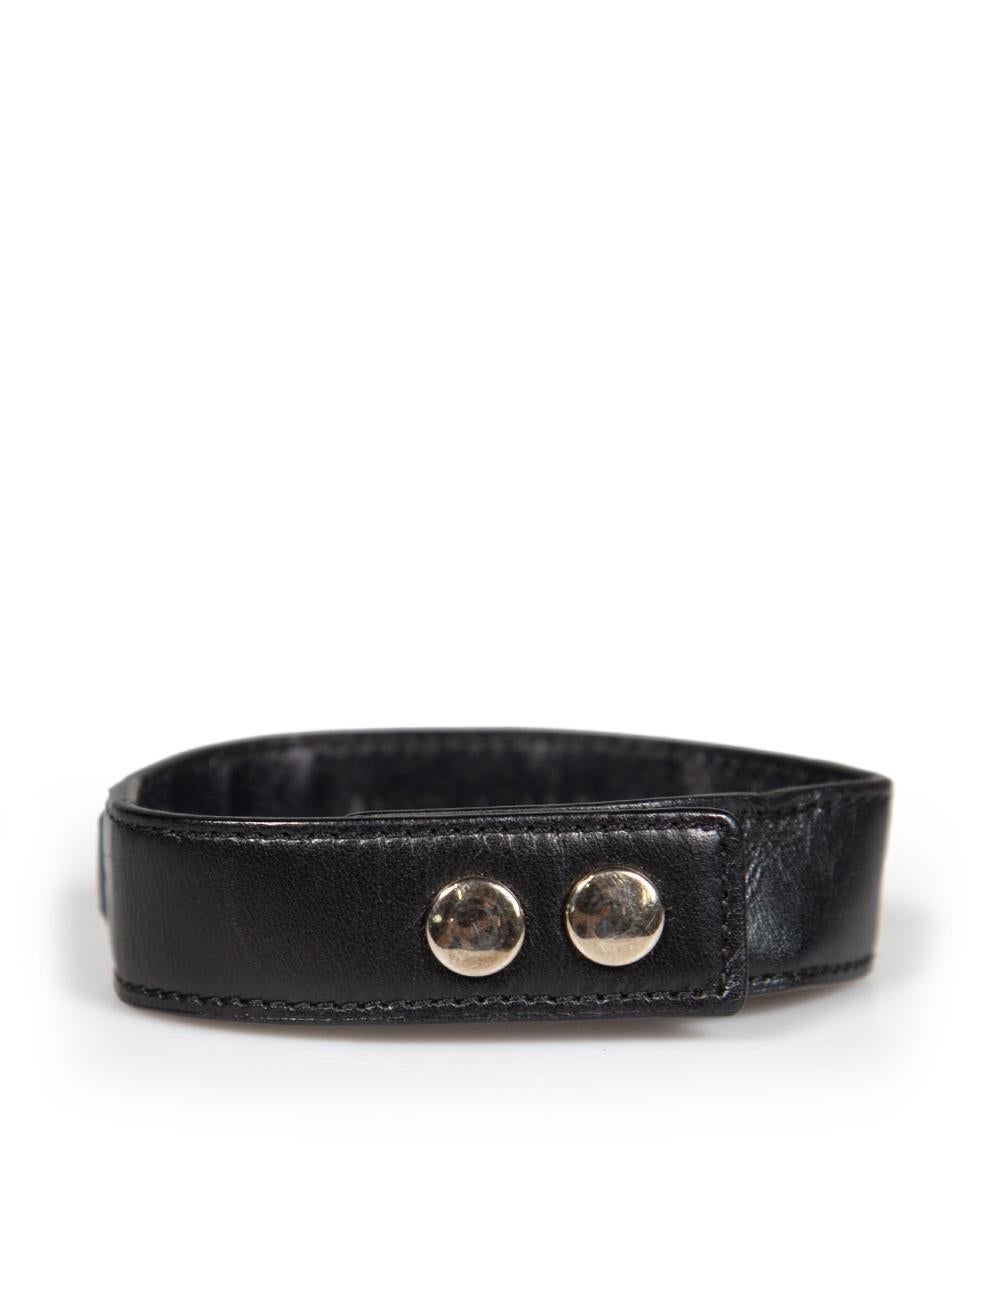 Women's Saint Laurent Black Leather Silver Chain Bracelet For Sale